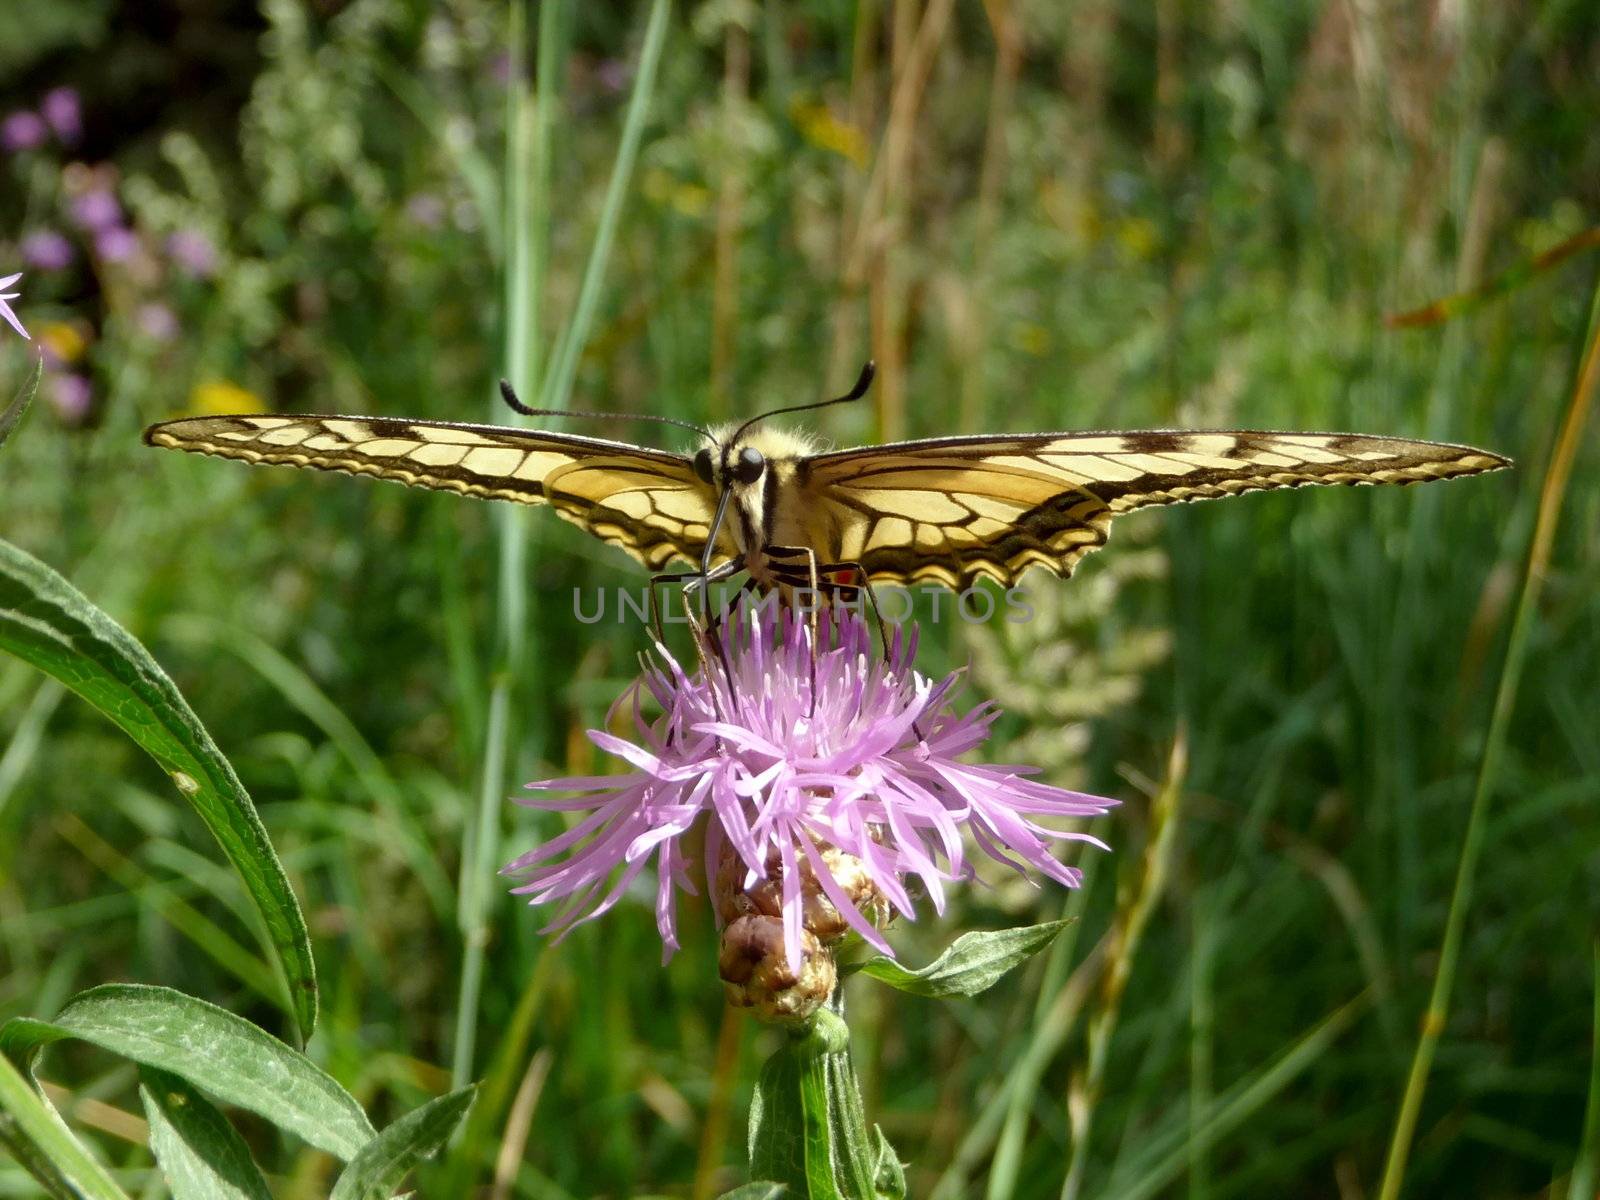 Swallowtail butterfly on the flower in field